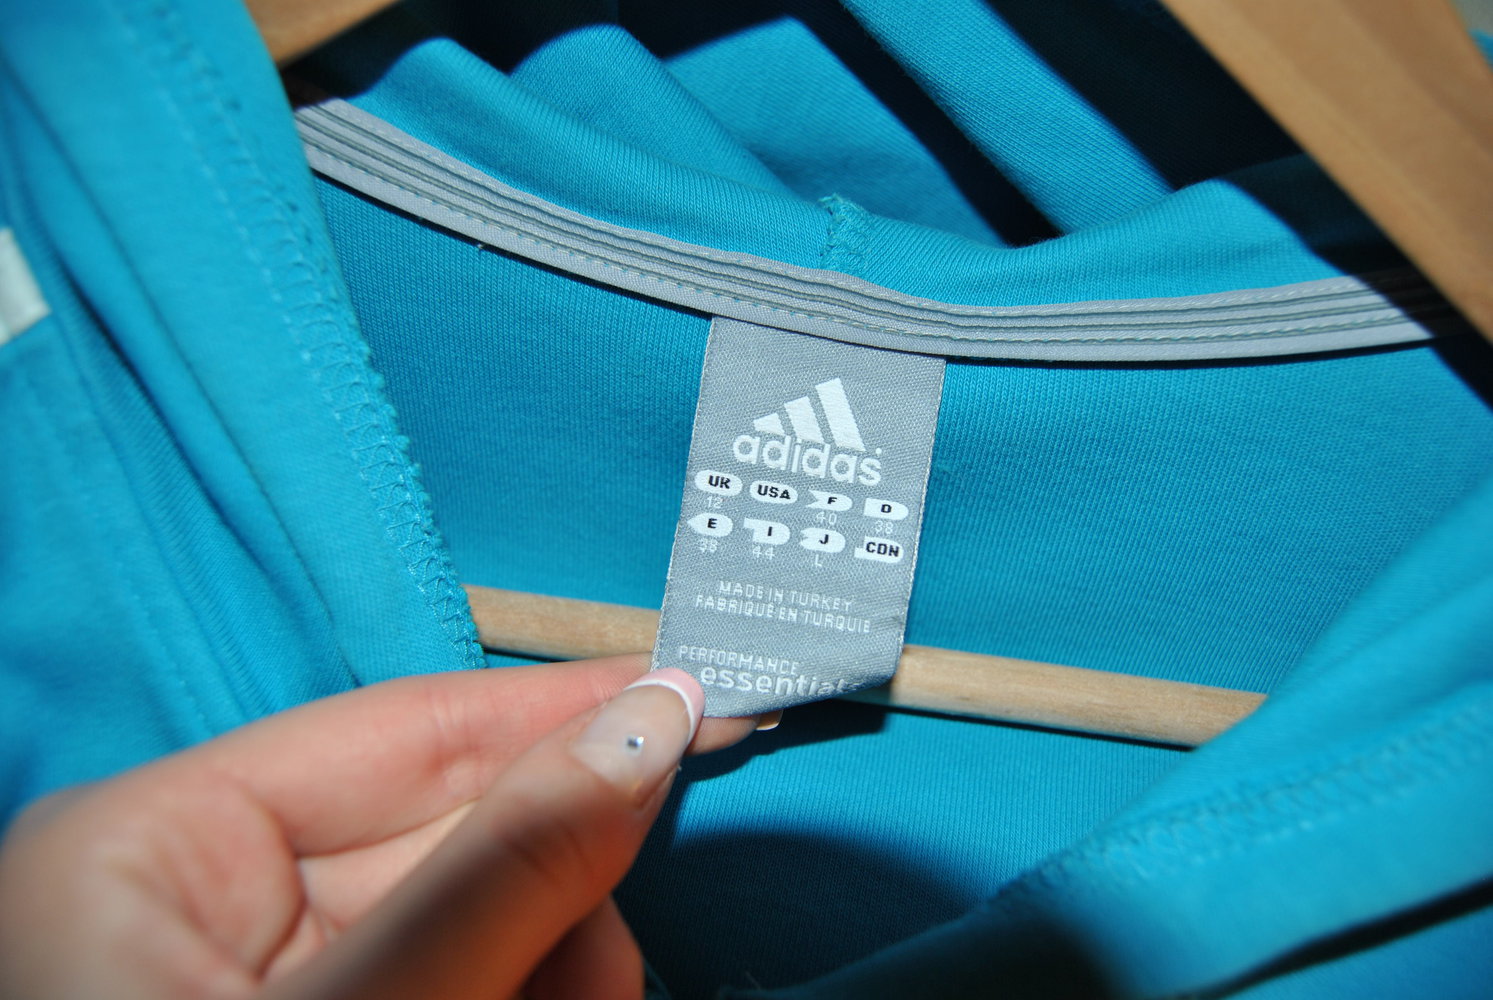 Adidas Jacke in blau